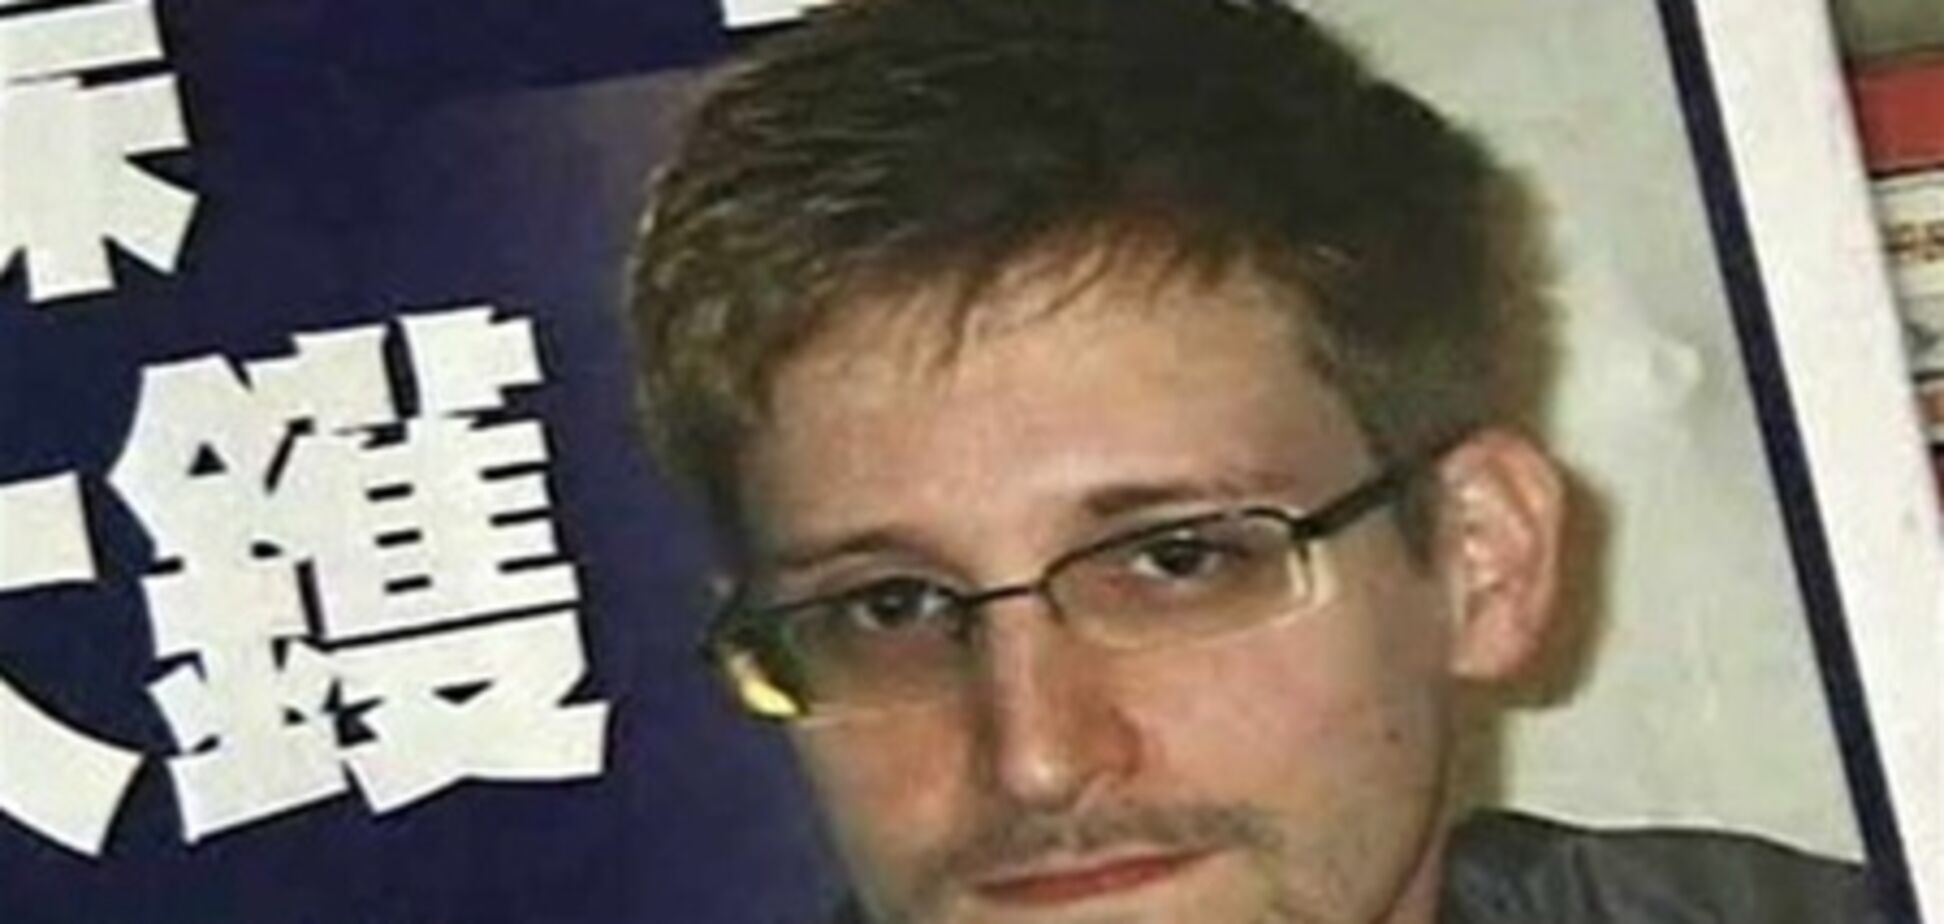 ЗМІ: Сноуден залишається на території 'Шереметьєво'